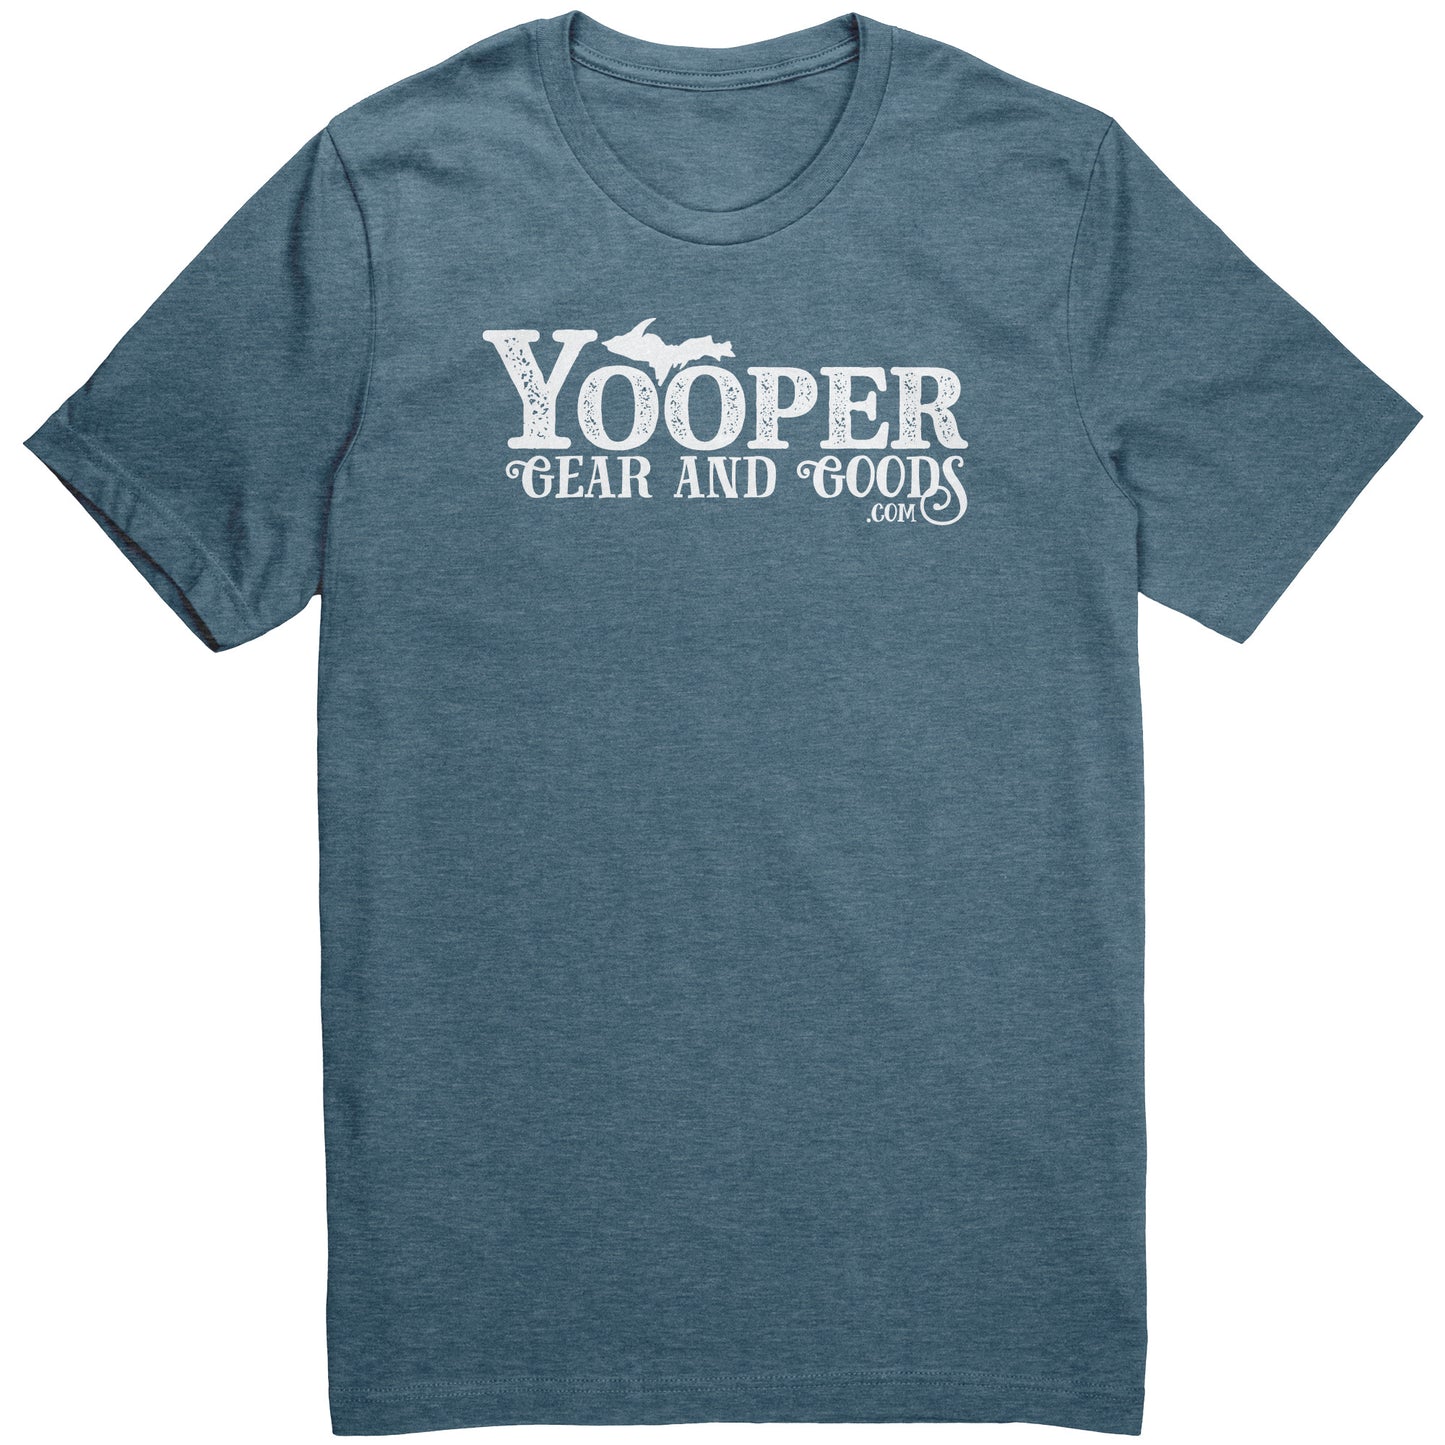 Yooper Gear and Goods Shirt